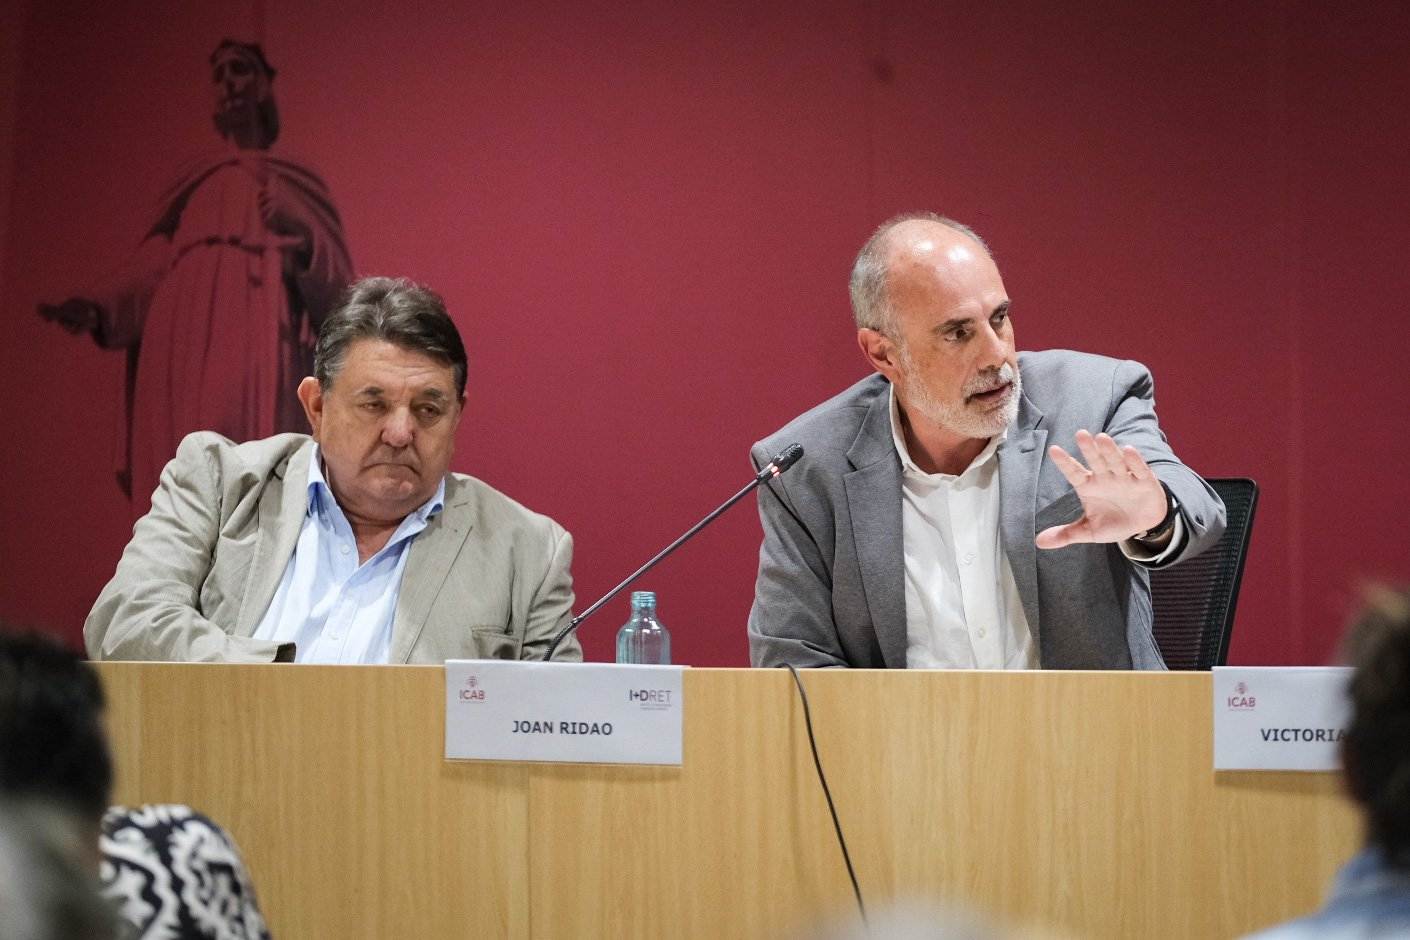 Gonzalo Quintero Olivares i Joan Ridao en el debat. Foto: Carlos Baglietto